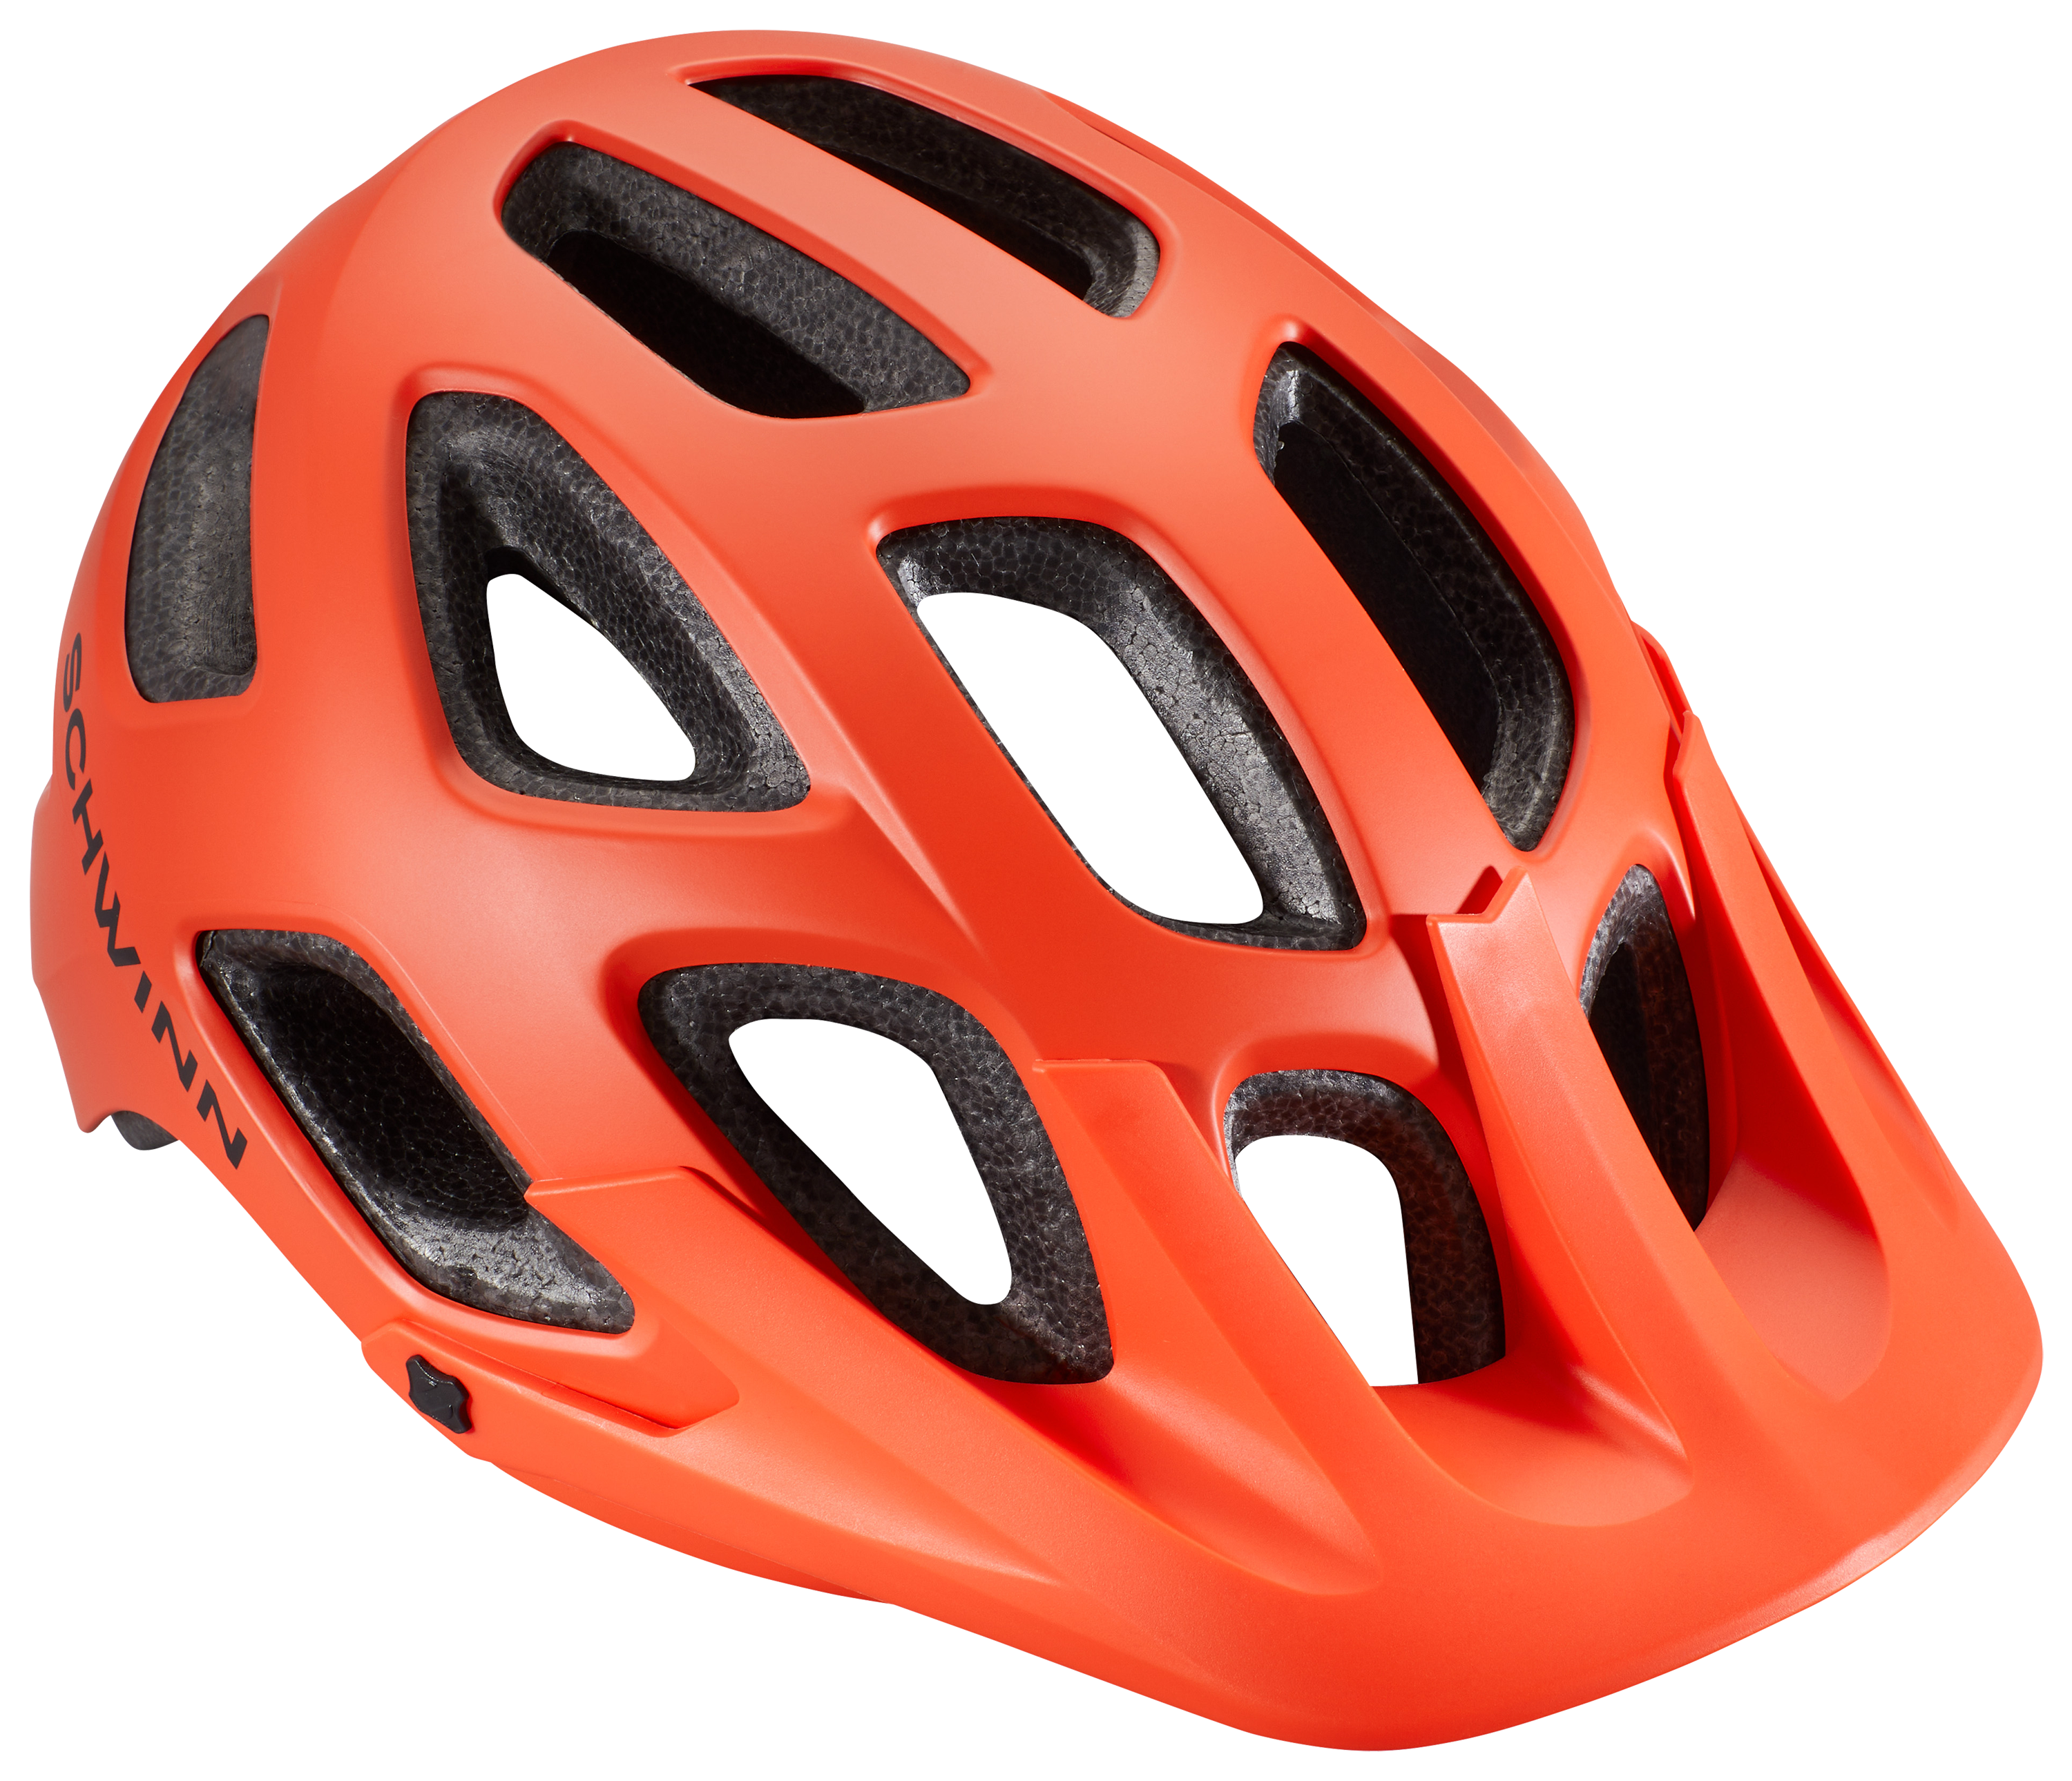 Schwinn Excursion Bike Helmet for Kids - Red - Age 5-8